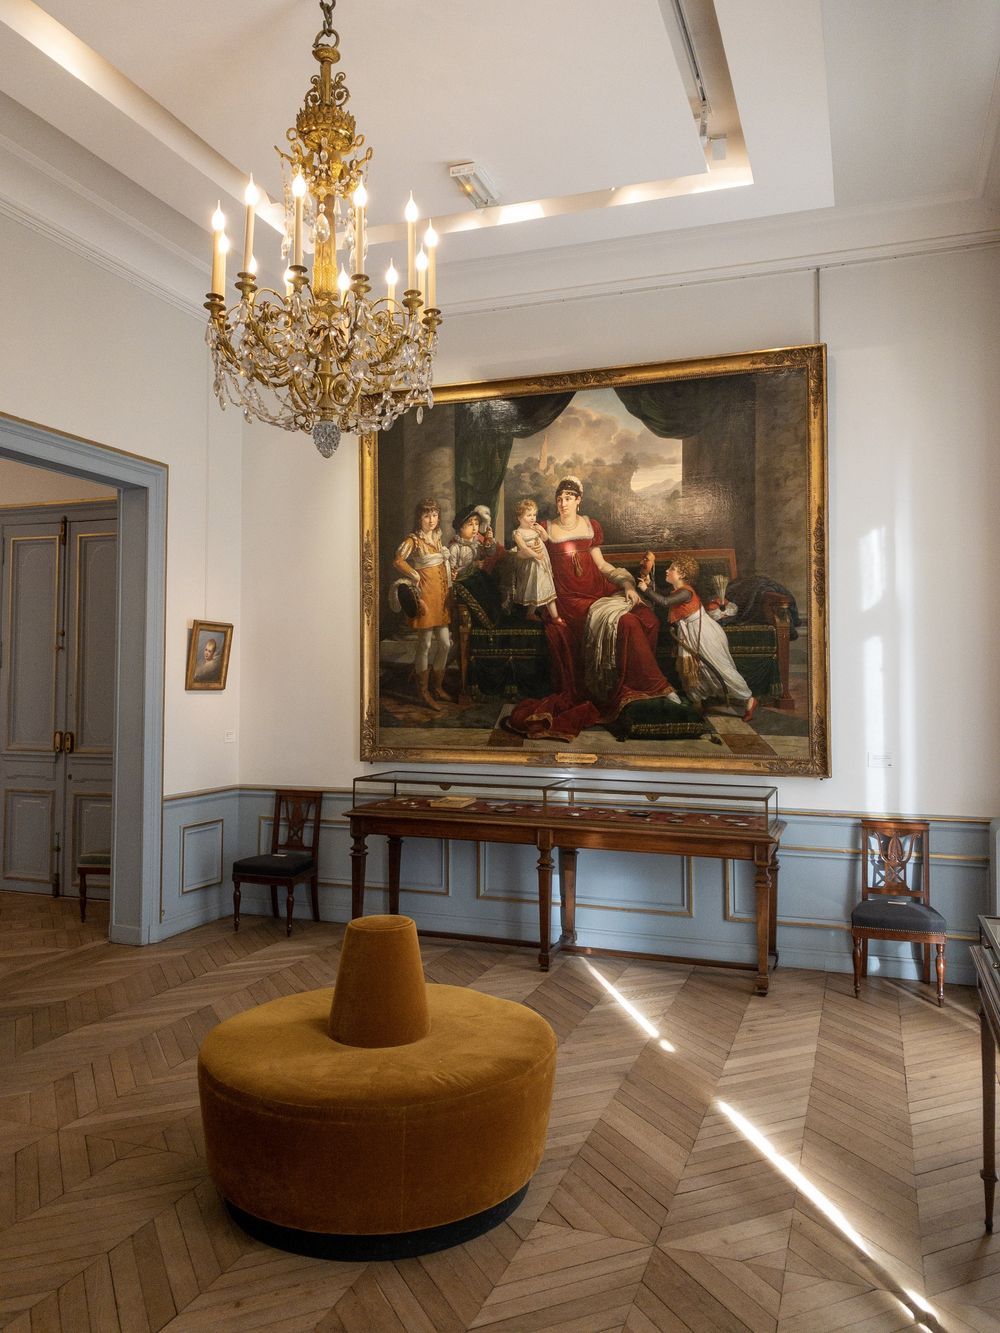 Musée Marmottan Monet Paris: largest collection of Claude Monet works